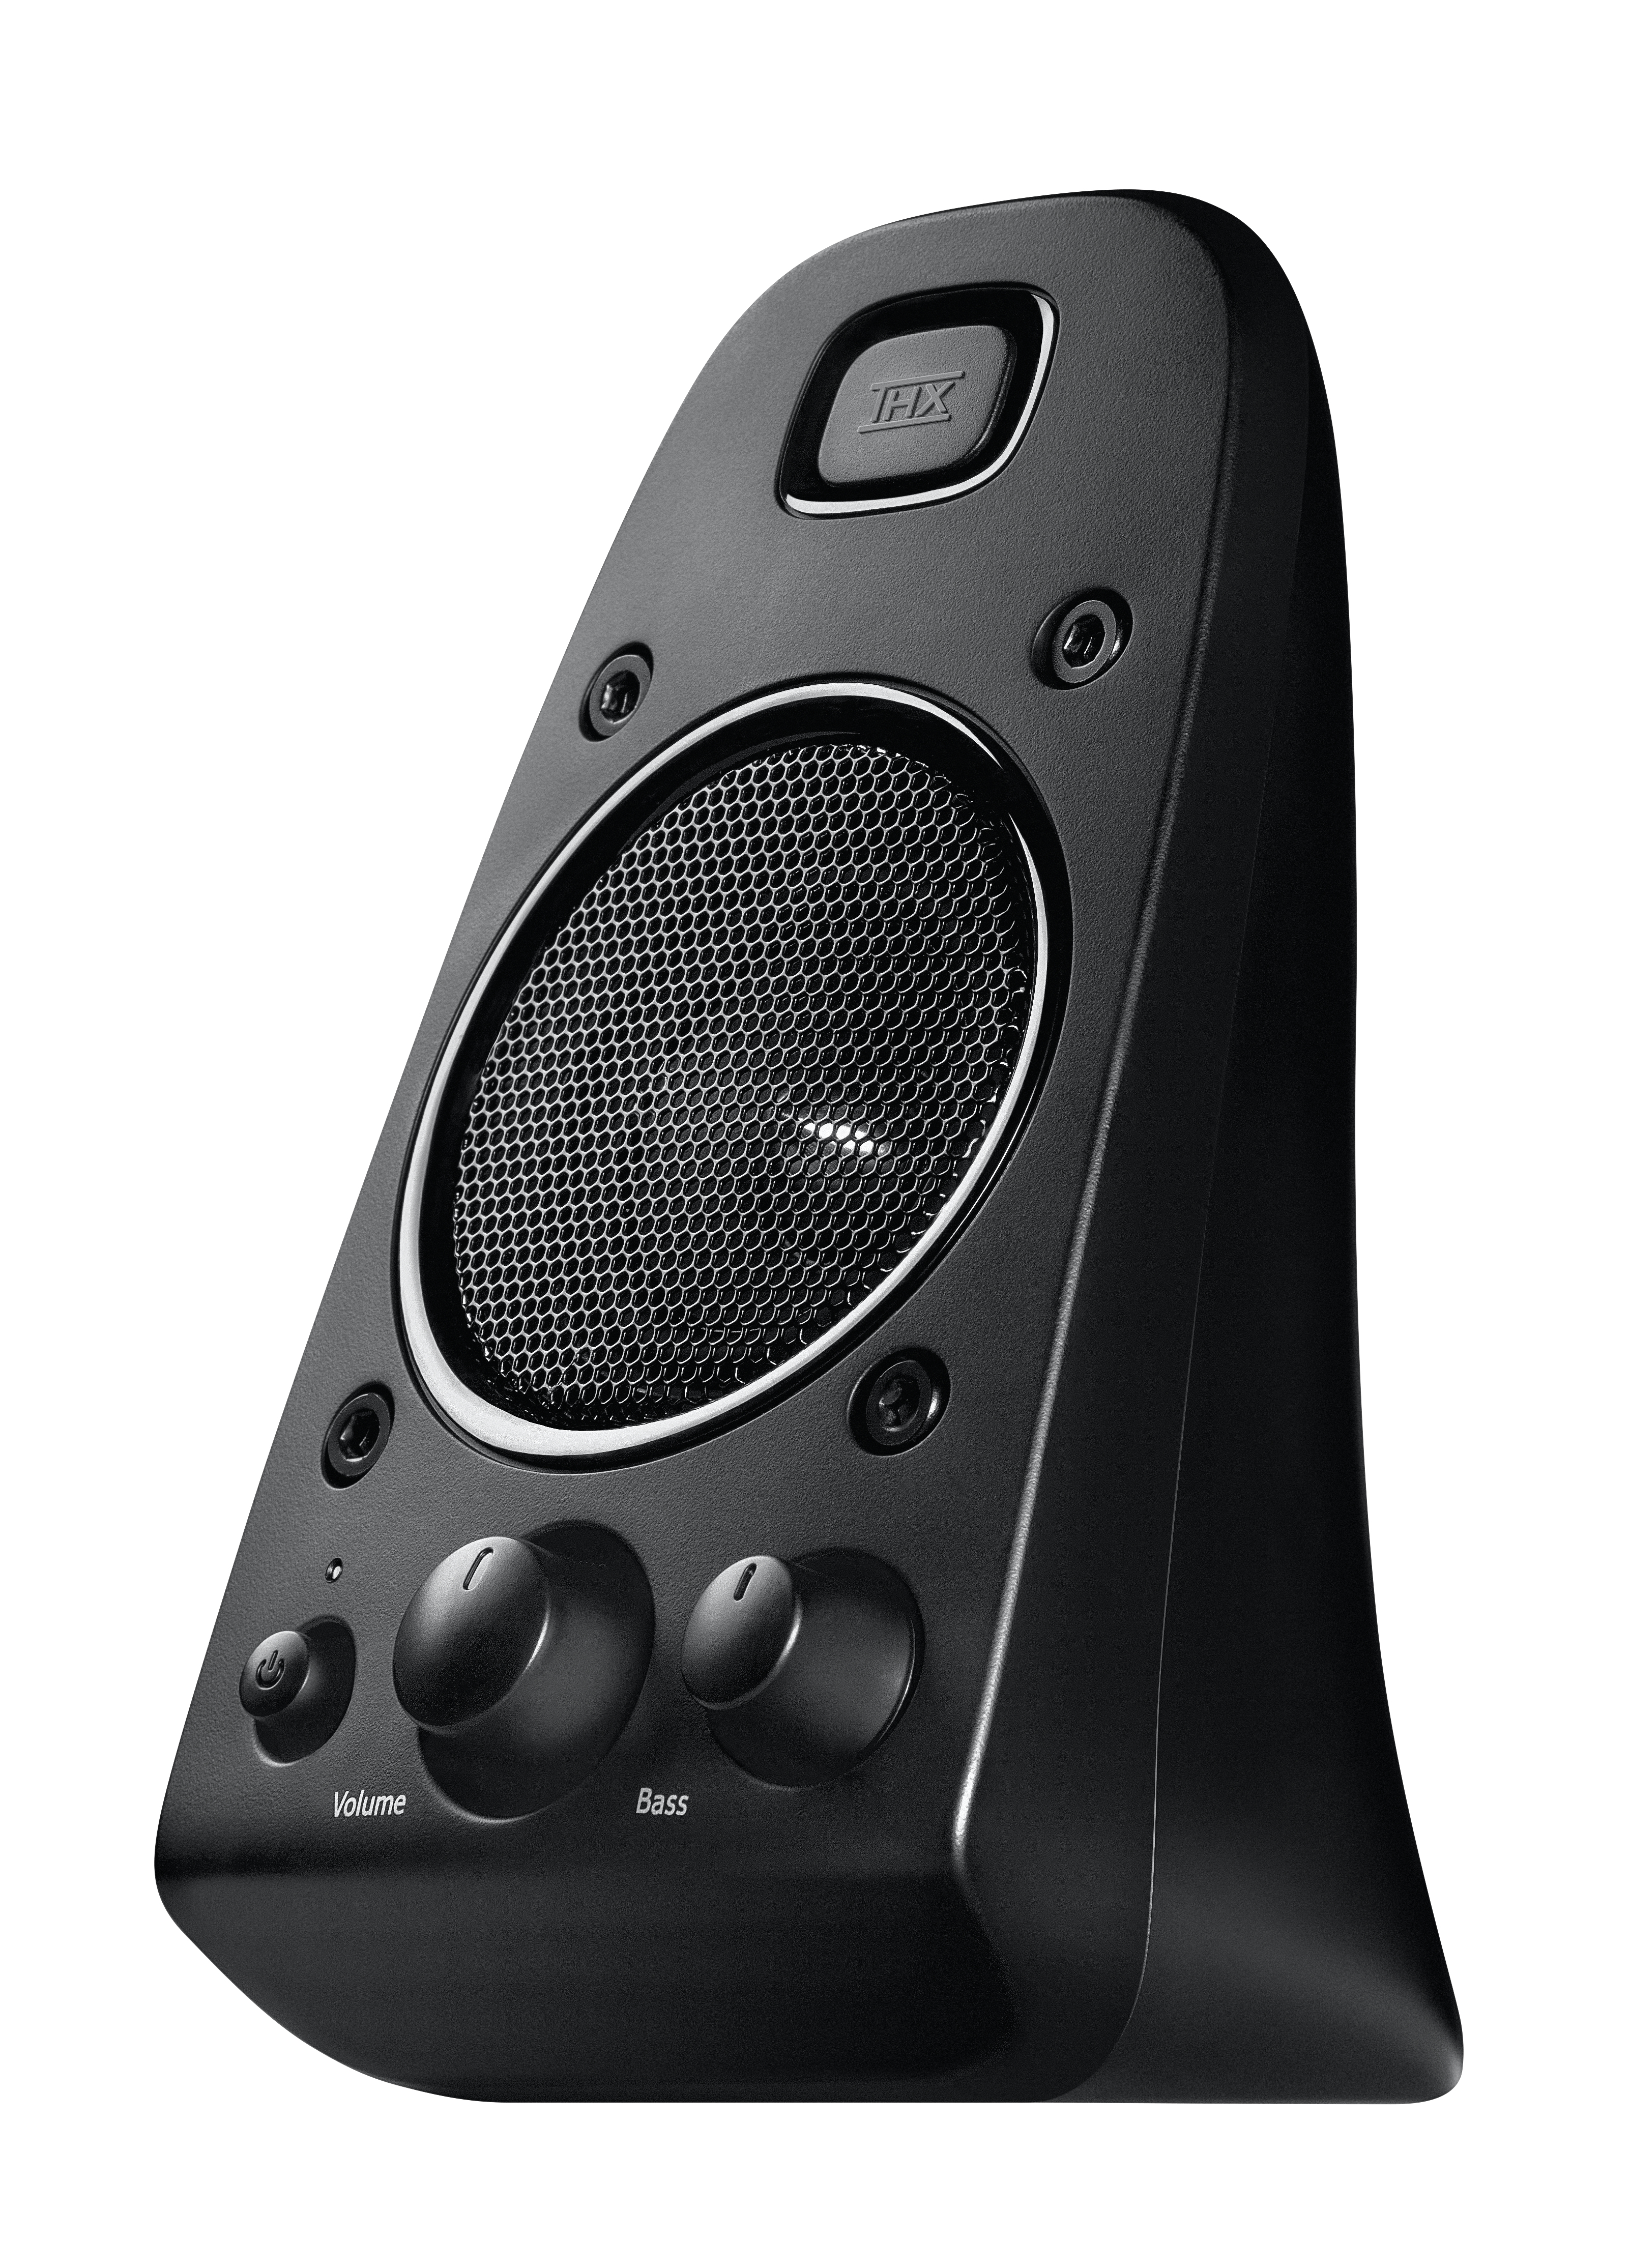 Logitech Speaker System Z623 - 2.1 Kanäle - 200 W - Universal - Schwarz - 400 W - Drehregler